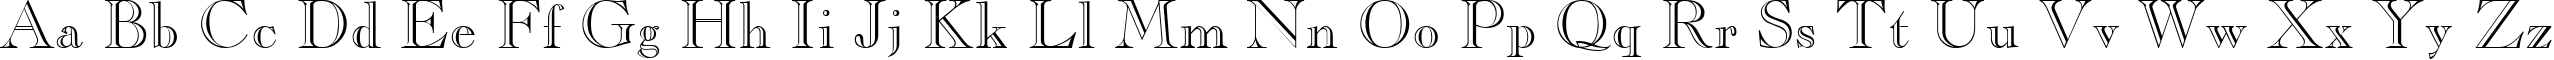 Пример написания английского алфавита шрифтом Casper